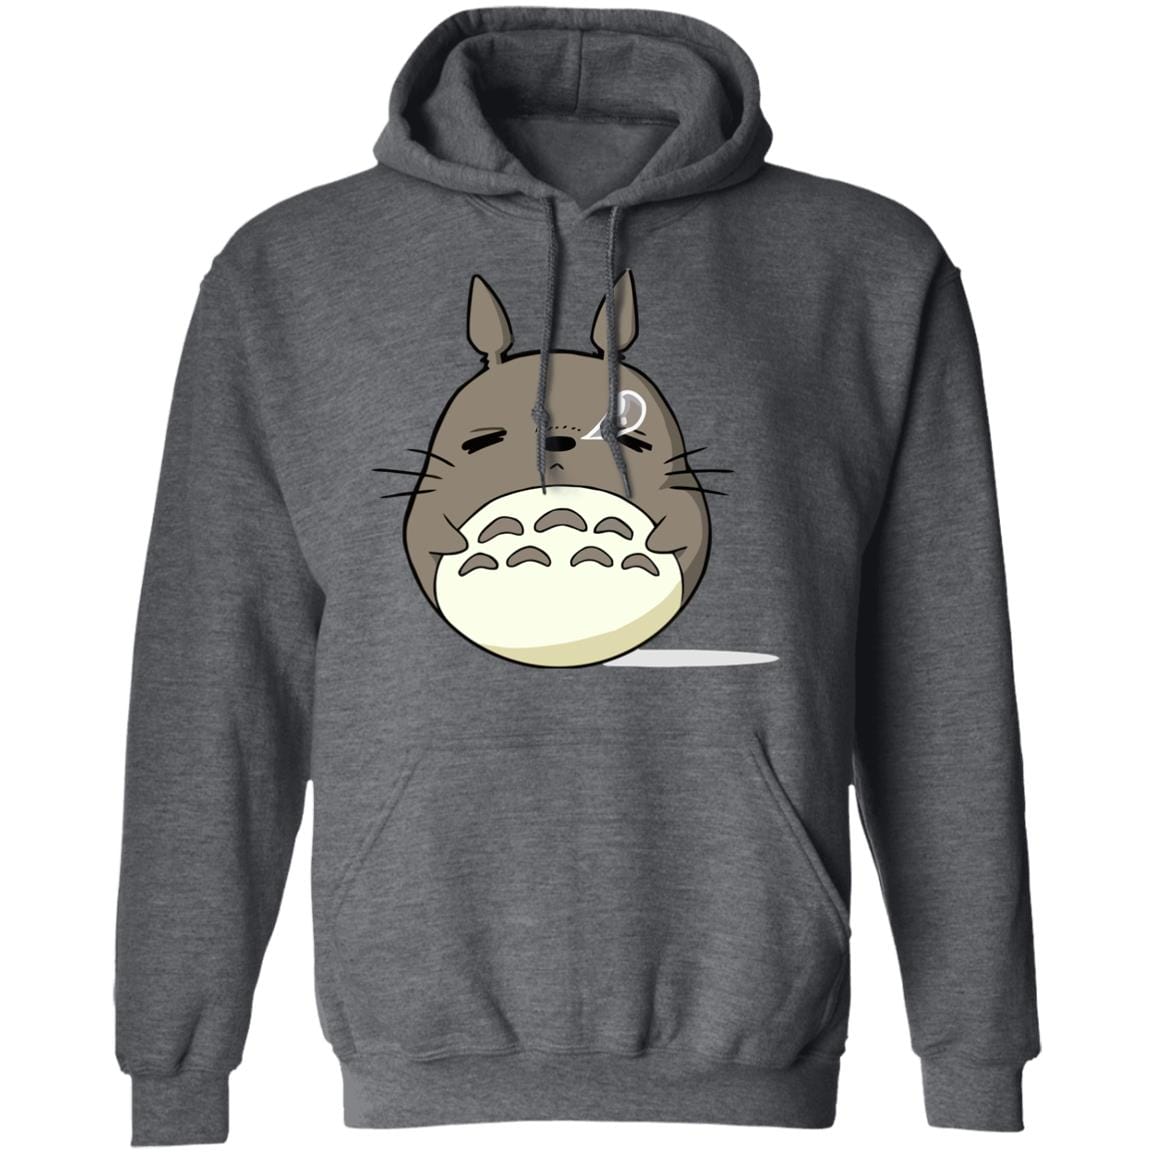 Sleepy Totoro Hoodie Ghibli Store ghibli.store